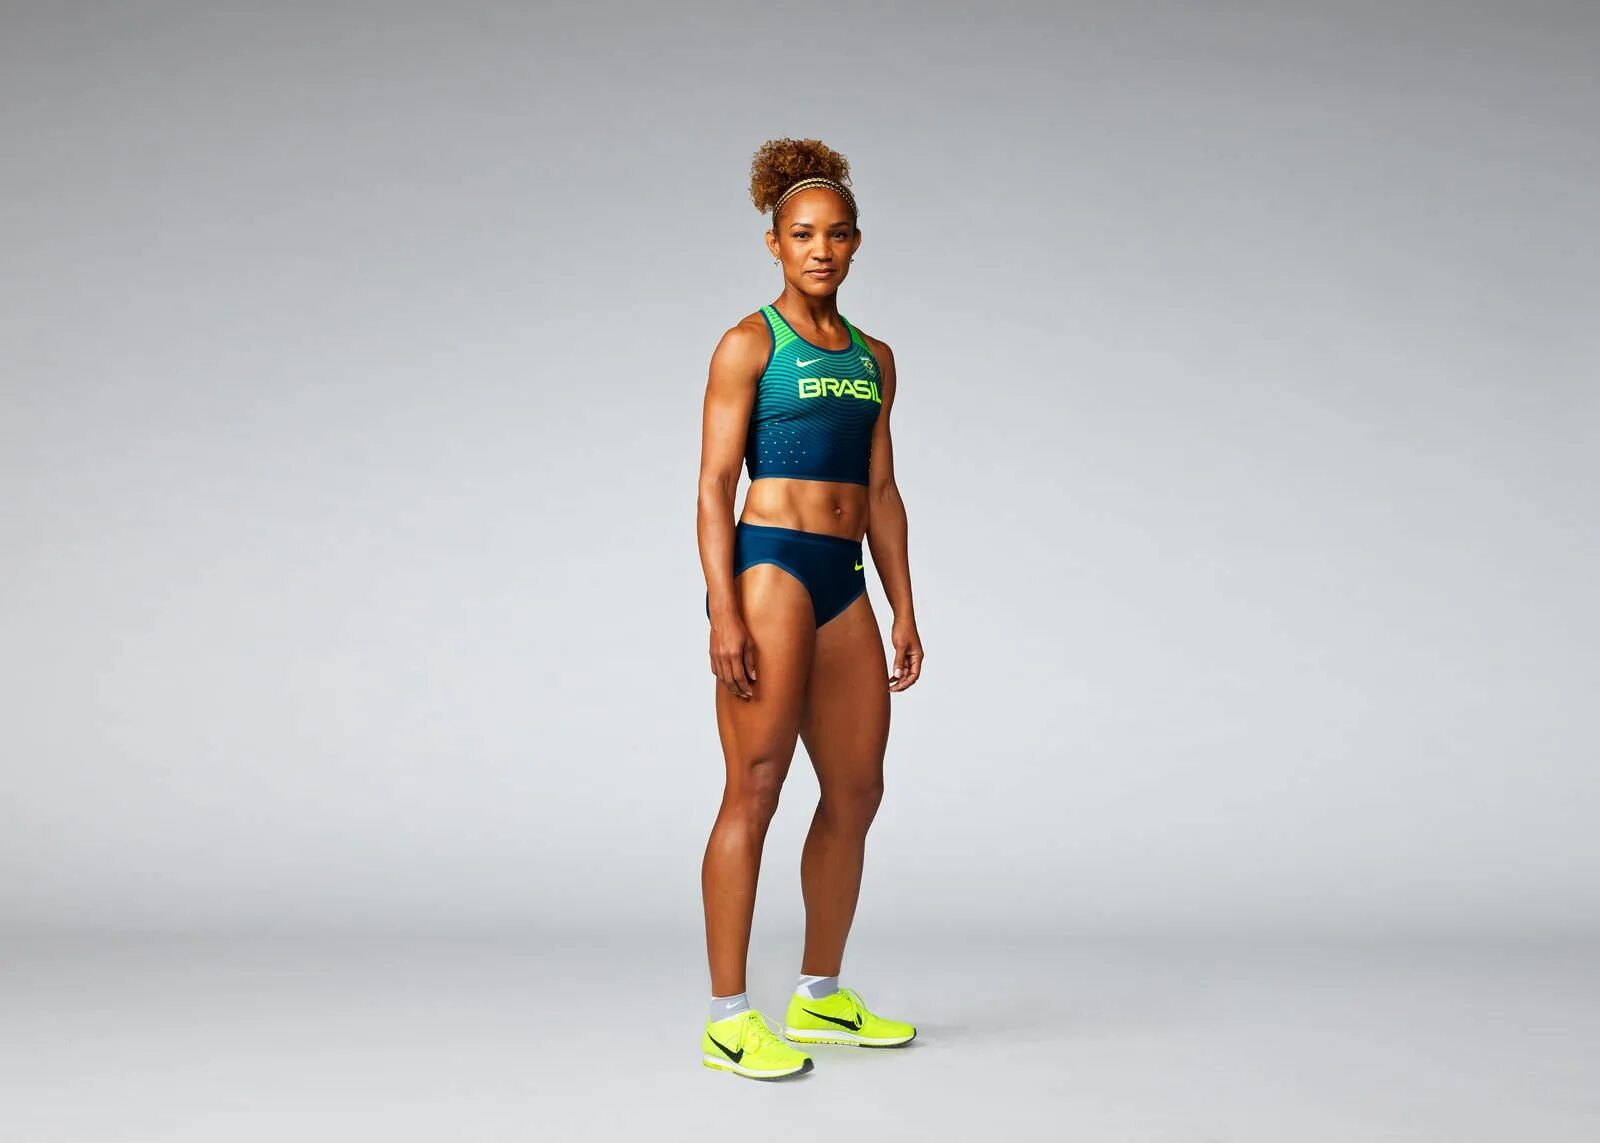 Экипировка для легкой атлетики Nike. Форма для легкой атлетики женская найк. Nike track and field. Спортивная форма легкоатлетов. Одежда атлетика